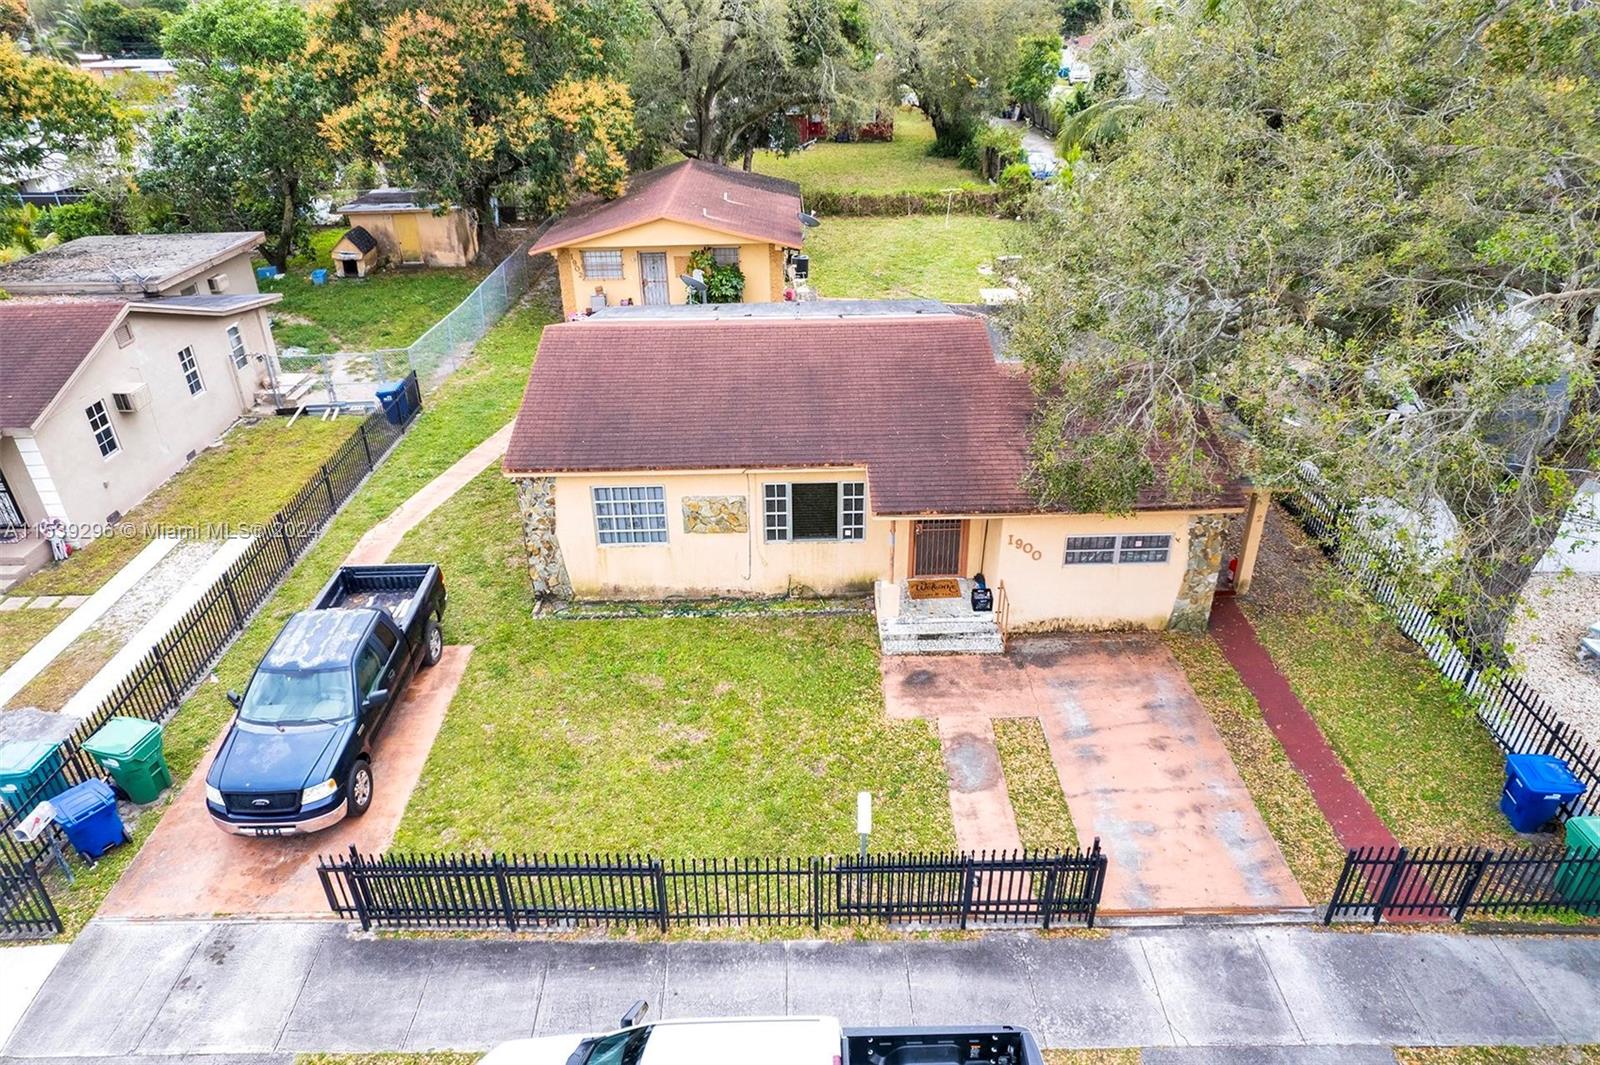 Rental Property at 1900 Nw 88th St St, Miami, Broward County, Florida -  - $675,000 MO.